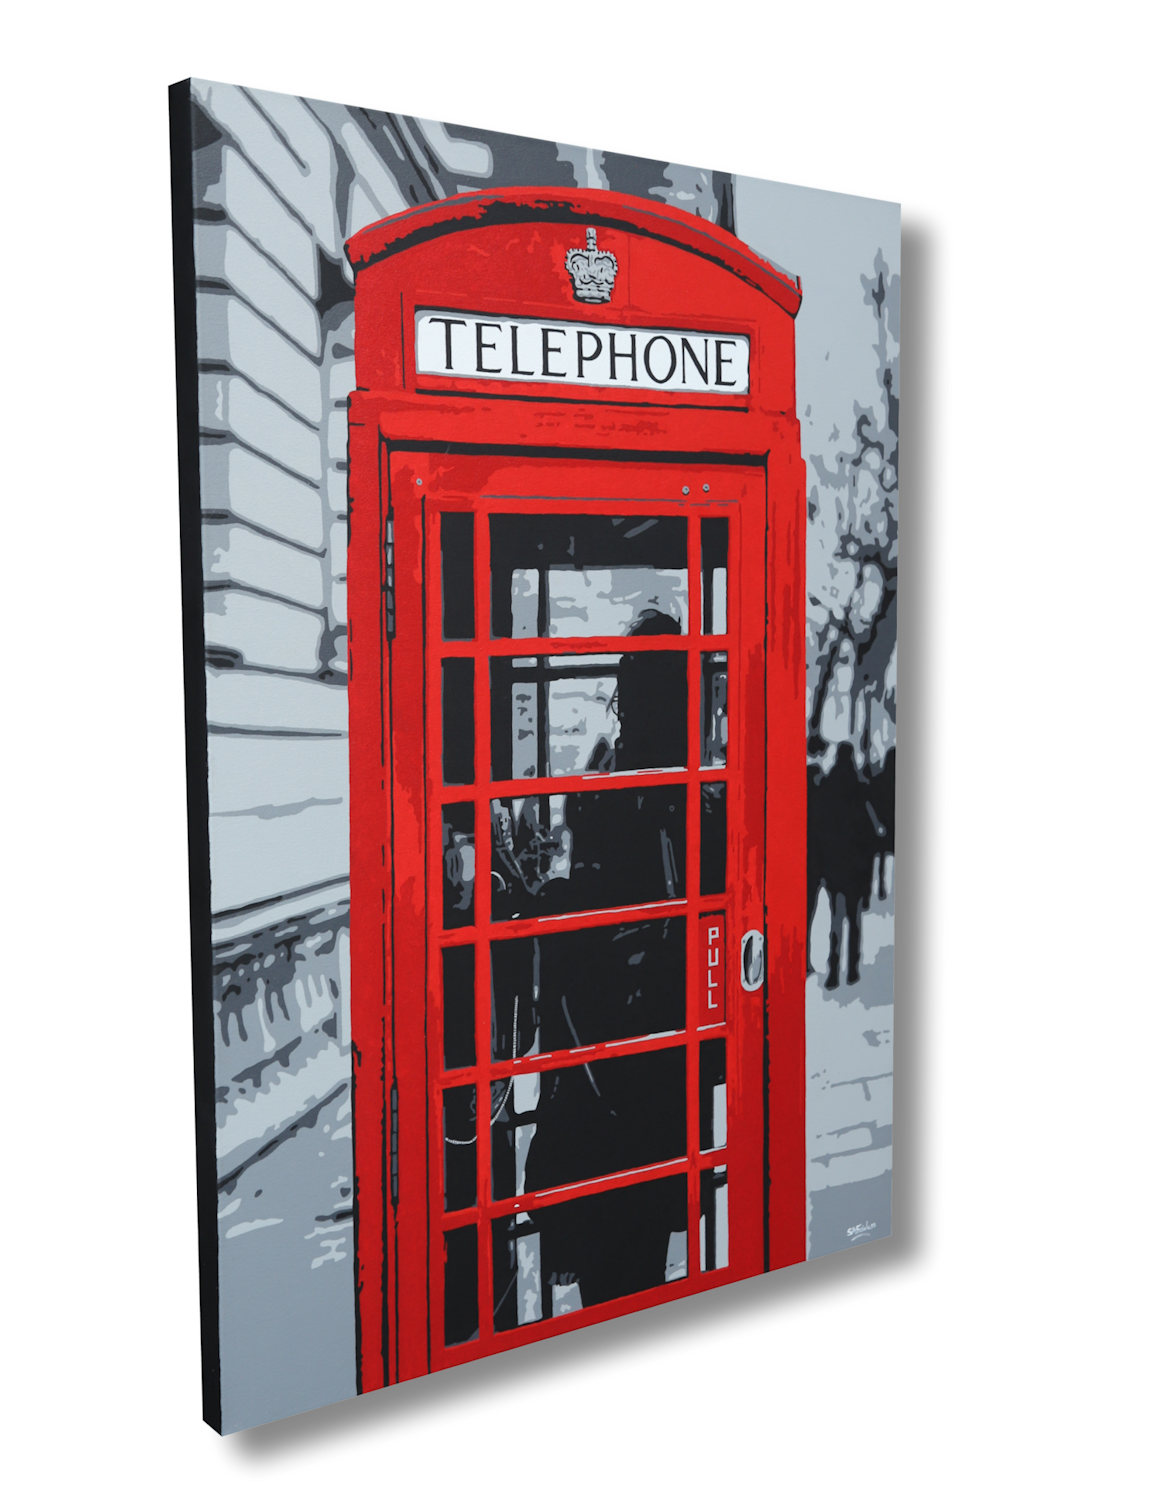 London phone box